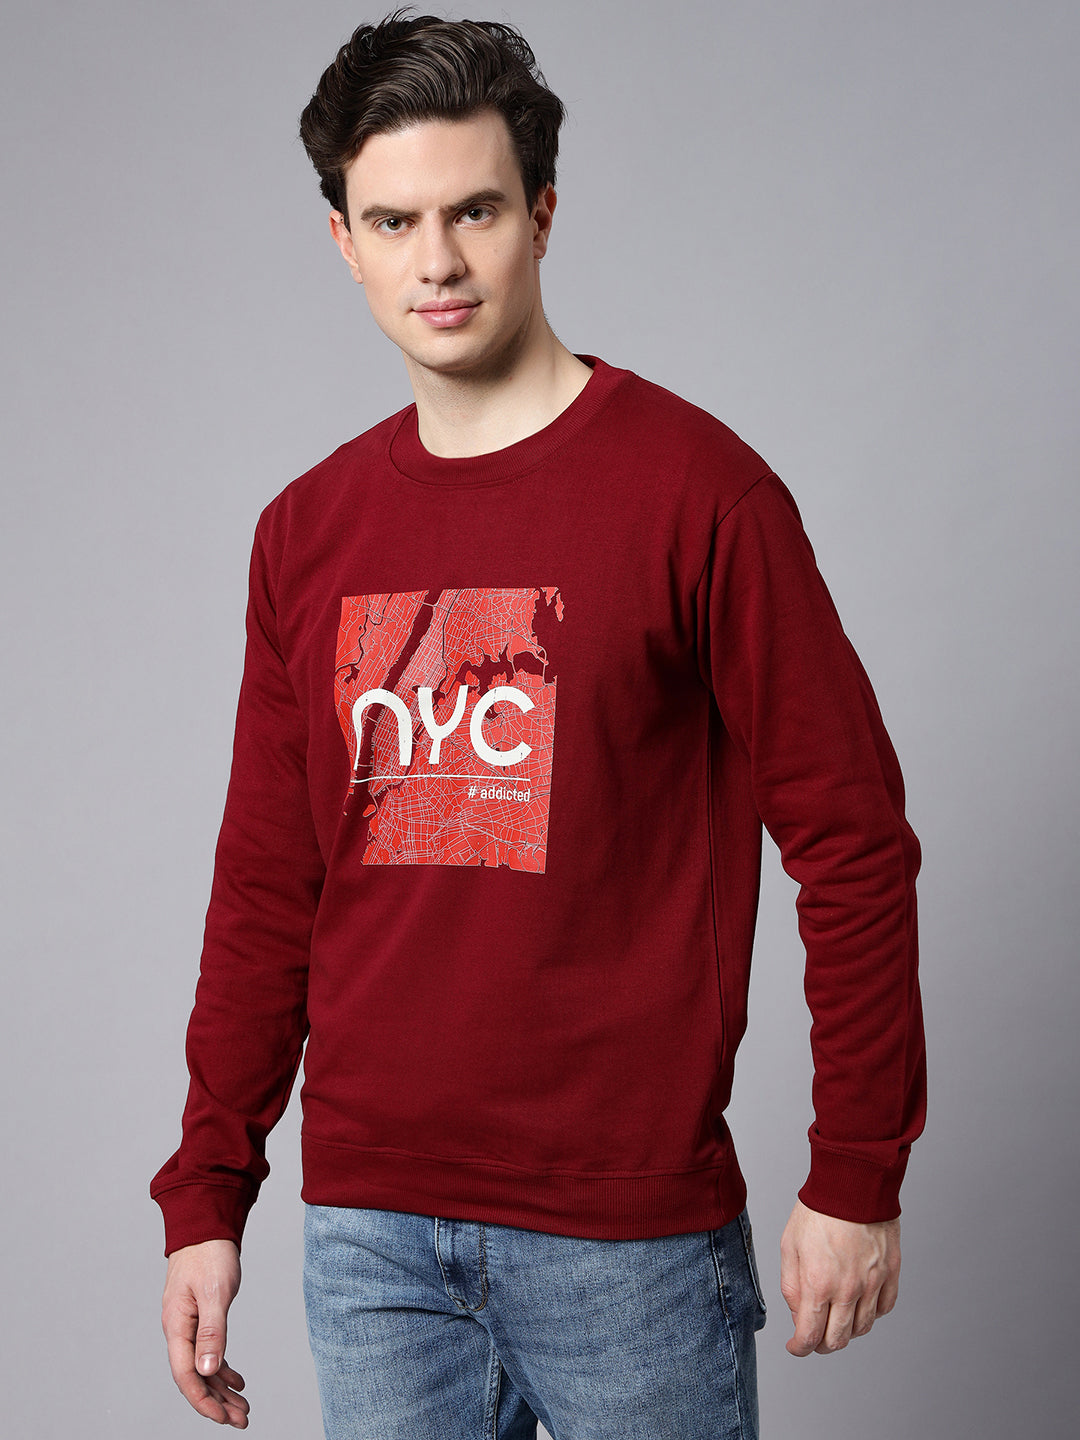 NYC Maroon Sweatshirt